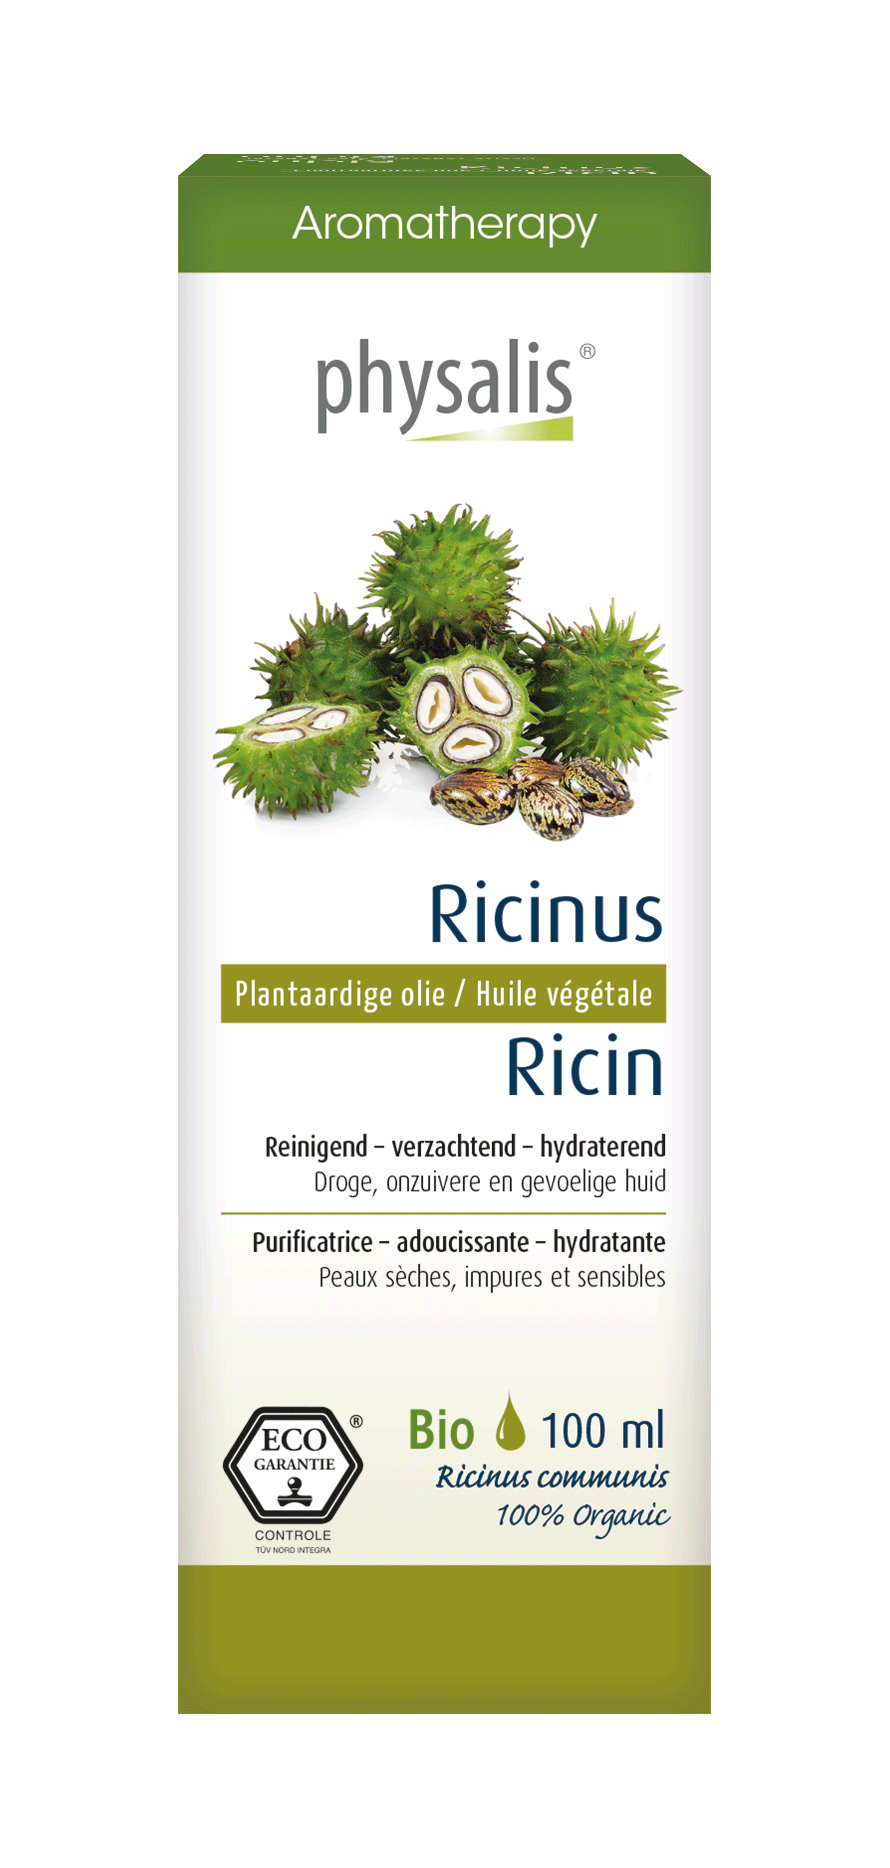 Ricinus